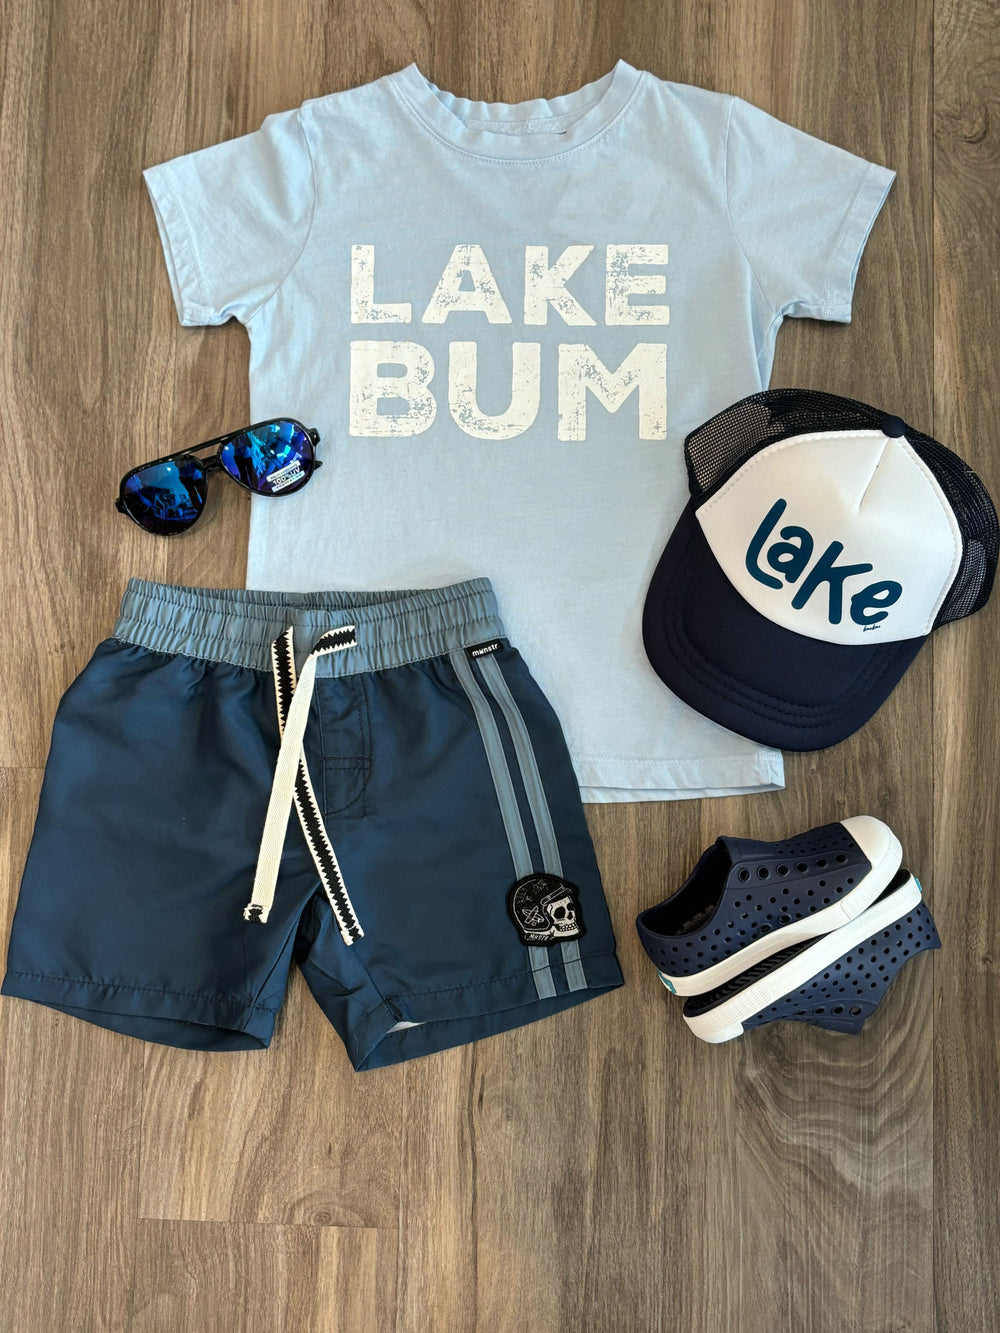 Lake Bum outfit toddler boy